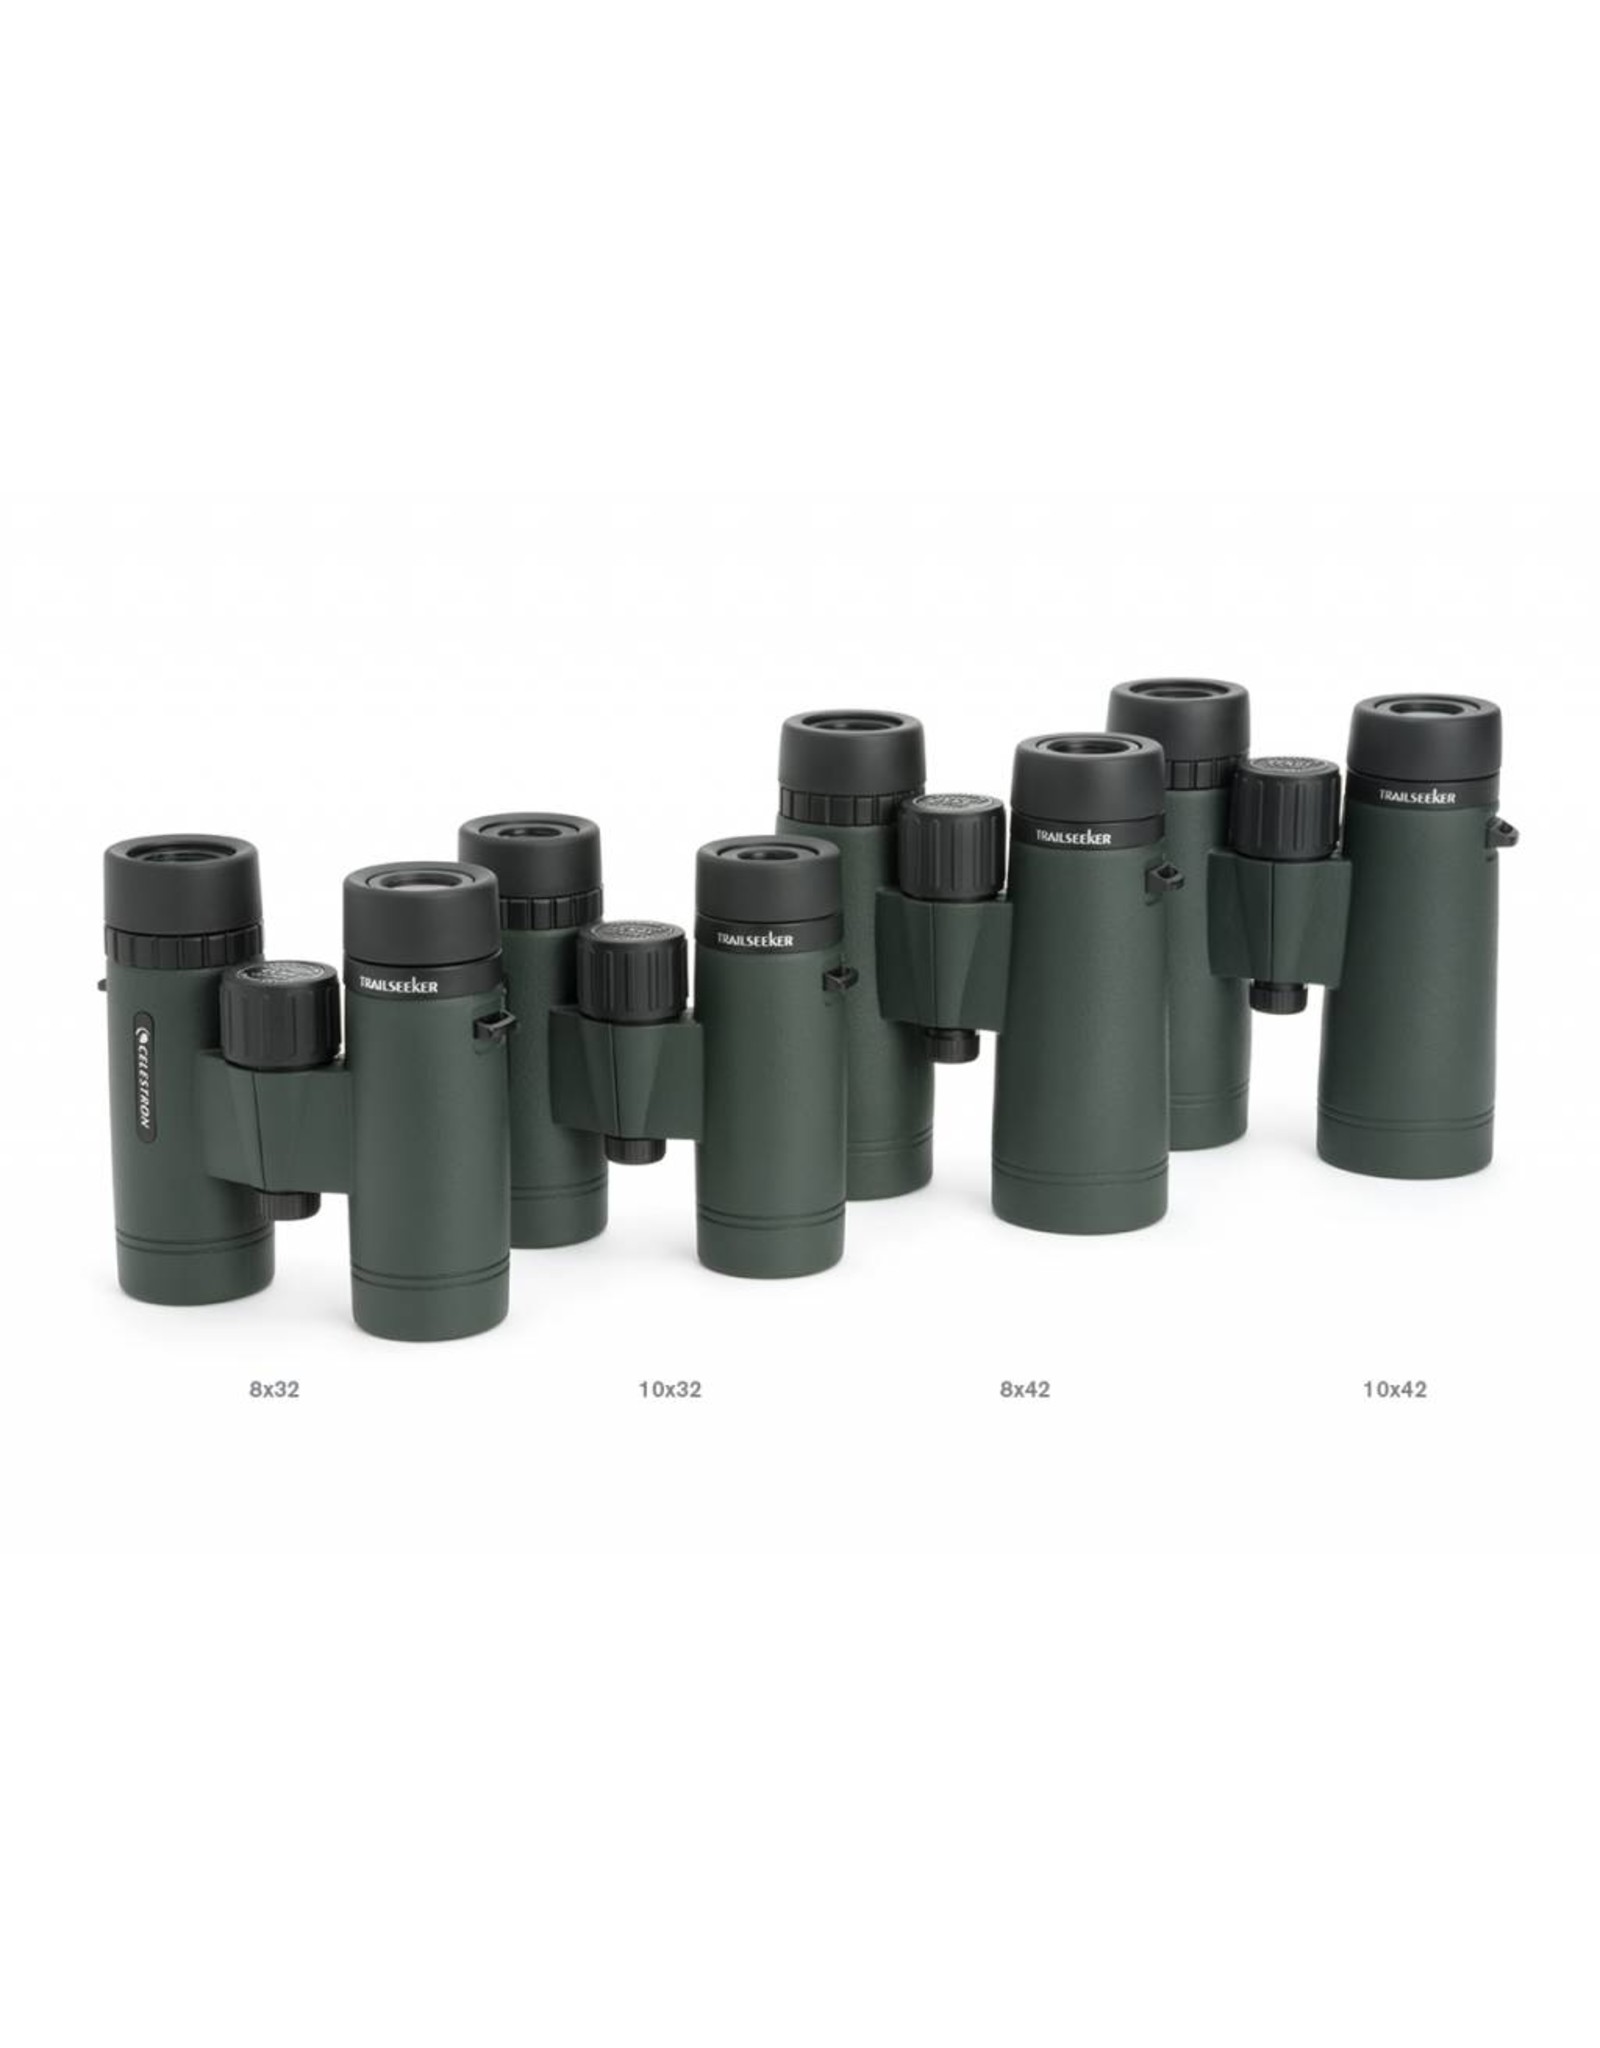 Celestron Celestron TrailSeeker 10x42 Binoculars